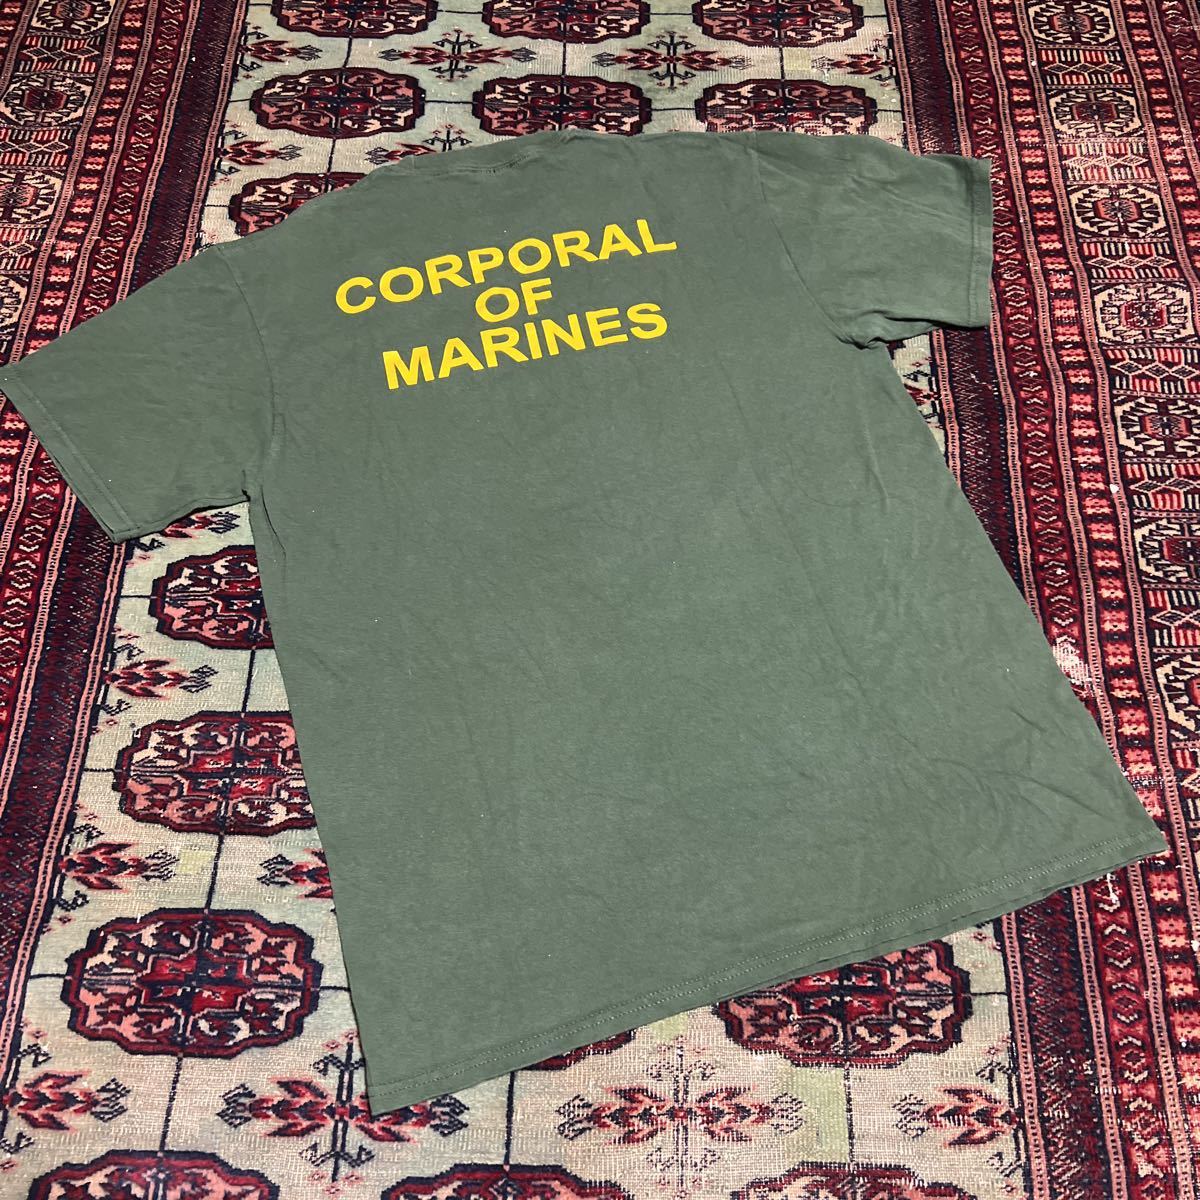  вооруженные силы США сброшенный товар USMC колледж Logo футболка размер M MARINE CORPS UNIVERSITY Champion 